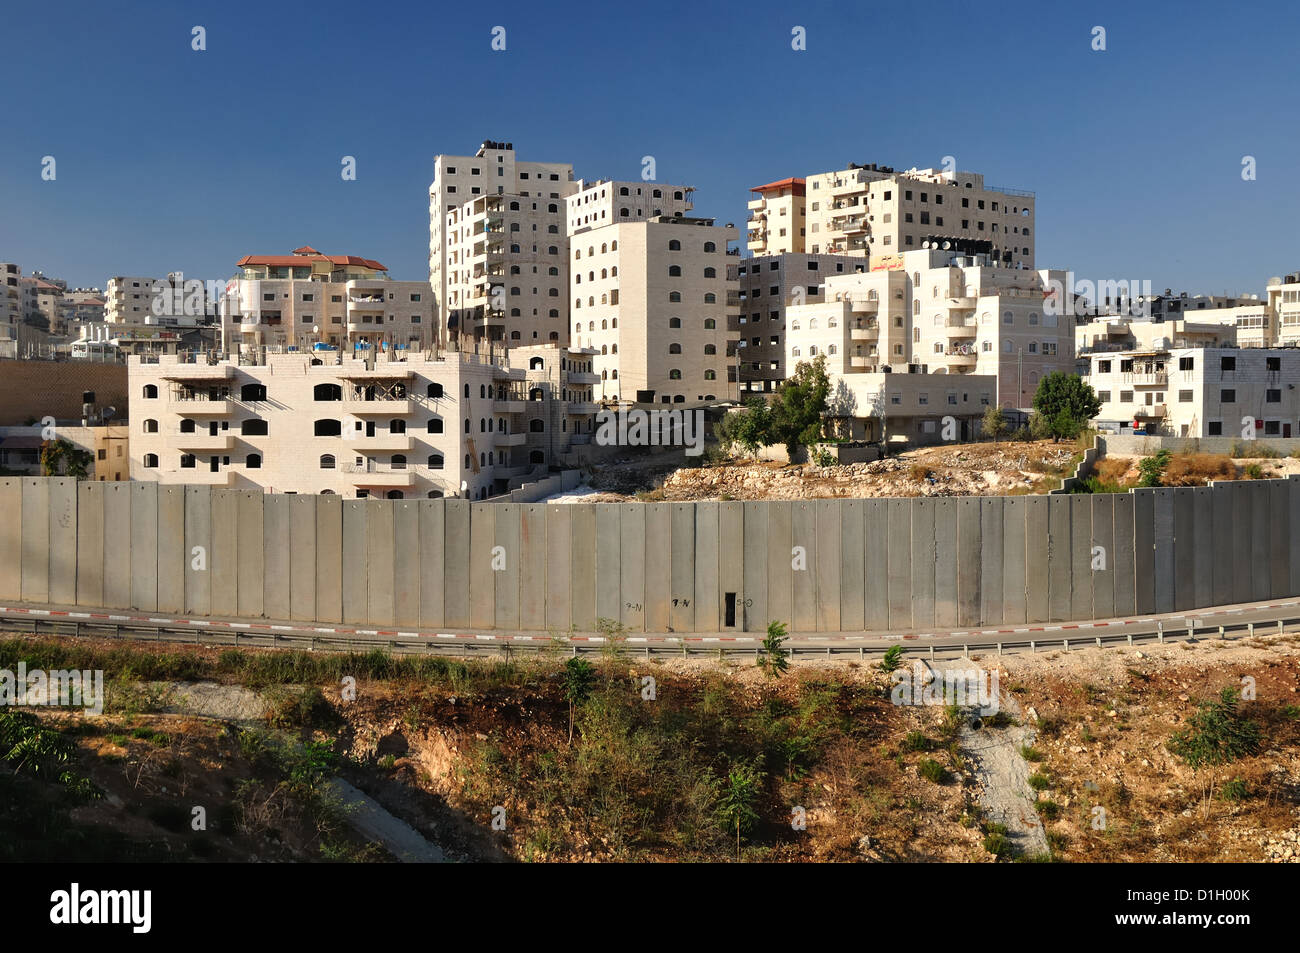 Clôture de sécurité, la séparation de la partie arabe de Jérusalem. Israël. Banque D'Images